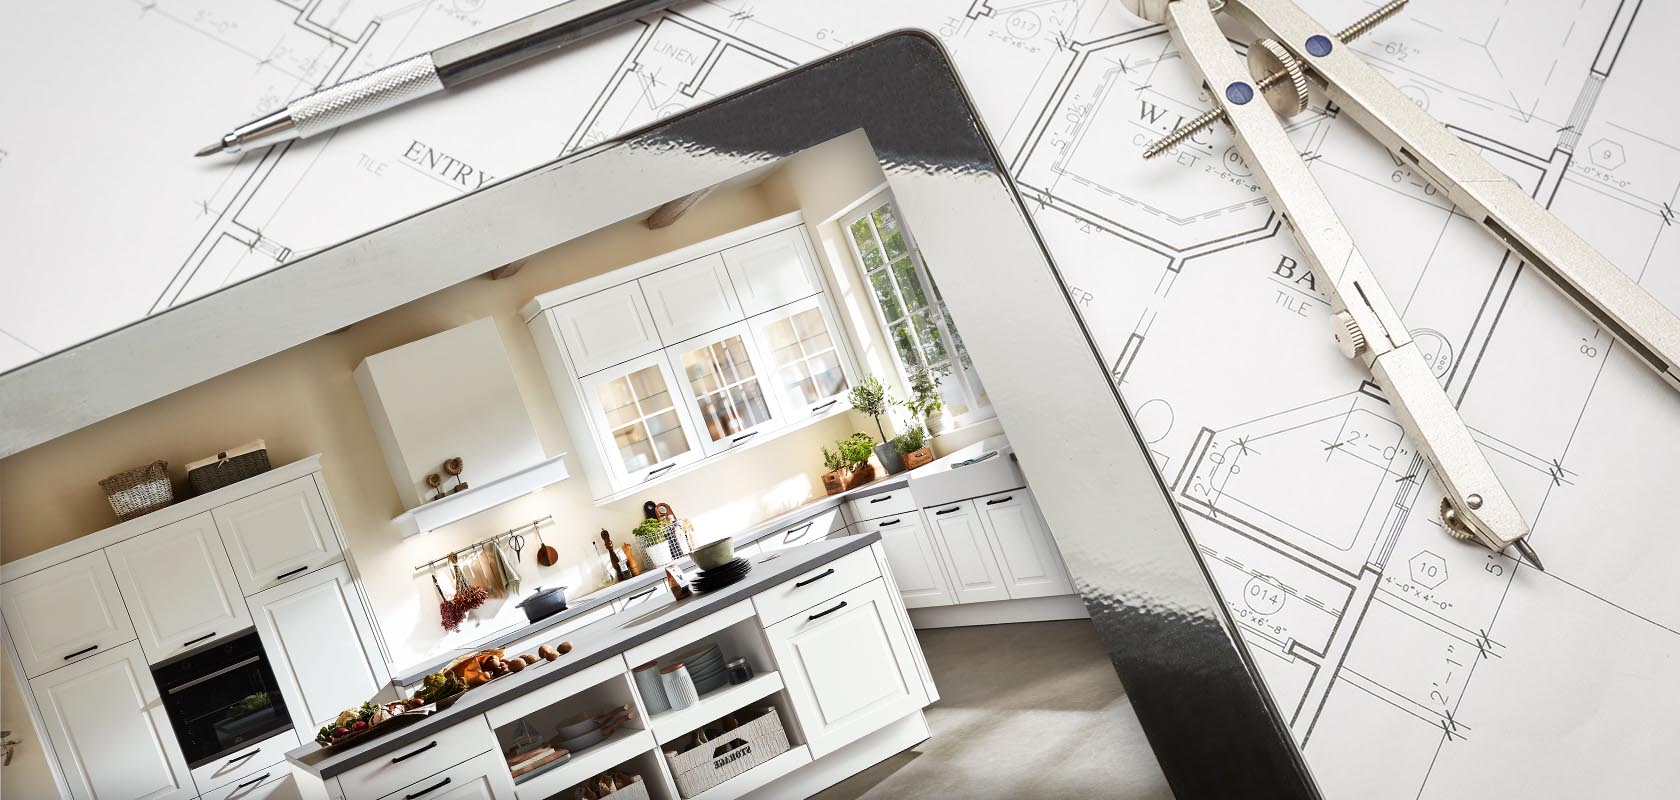 Transición de los planos a una cocina elegante y moderna con gabinetes blancos, mostrando la transformación desde el diseño hasta la finalización en la renovación del hogar.